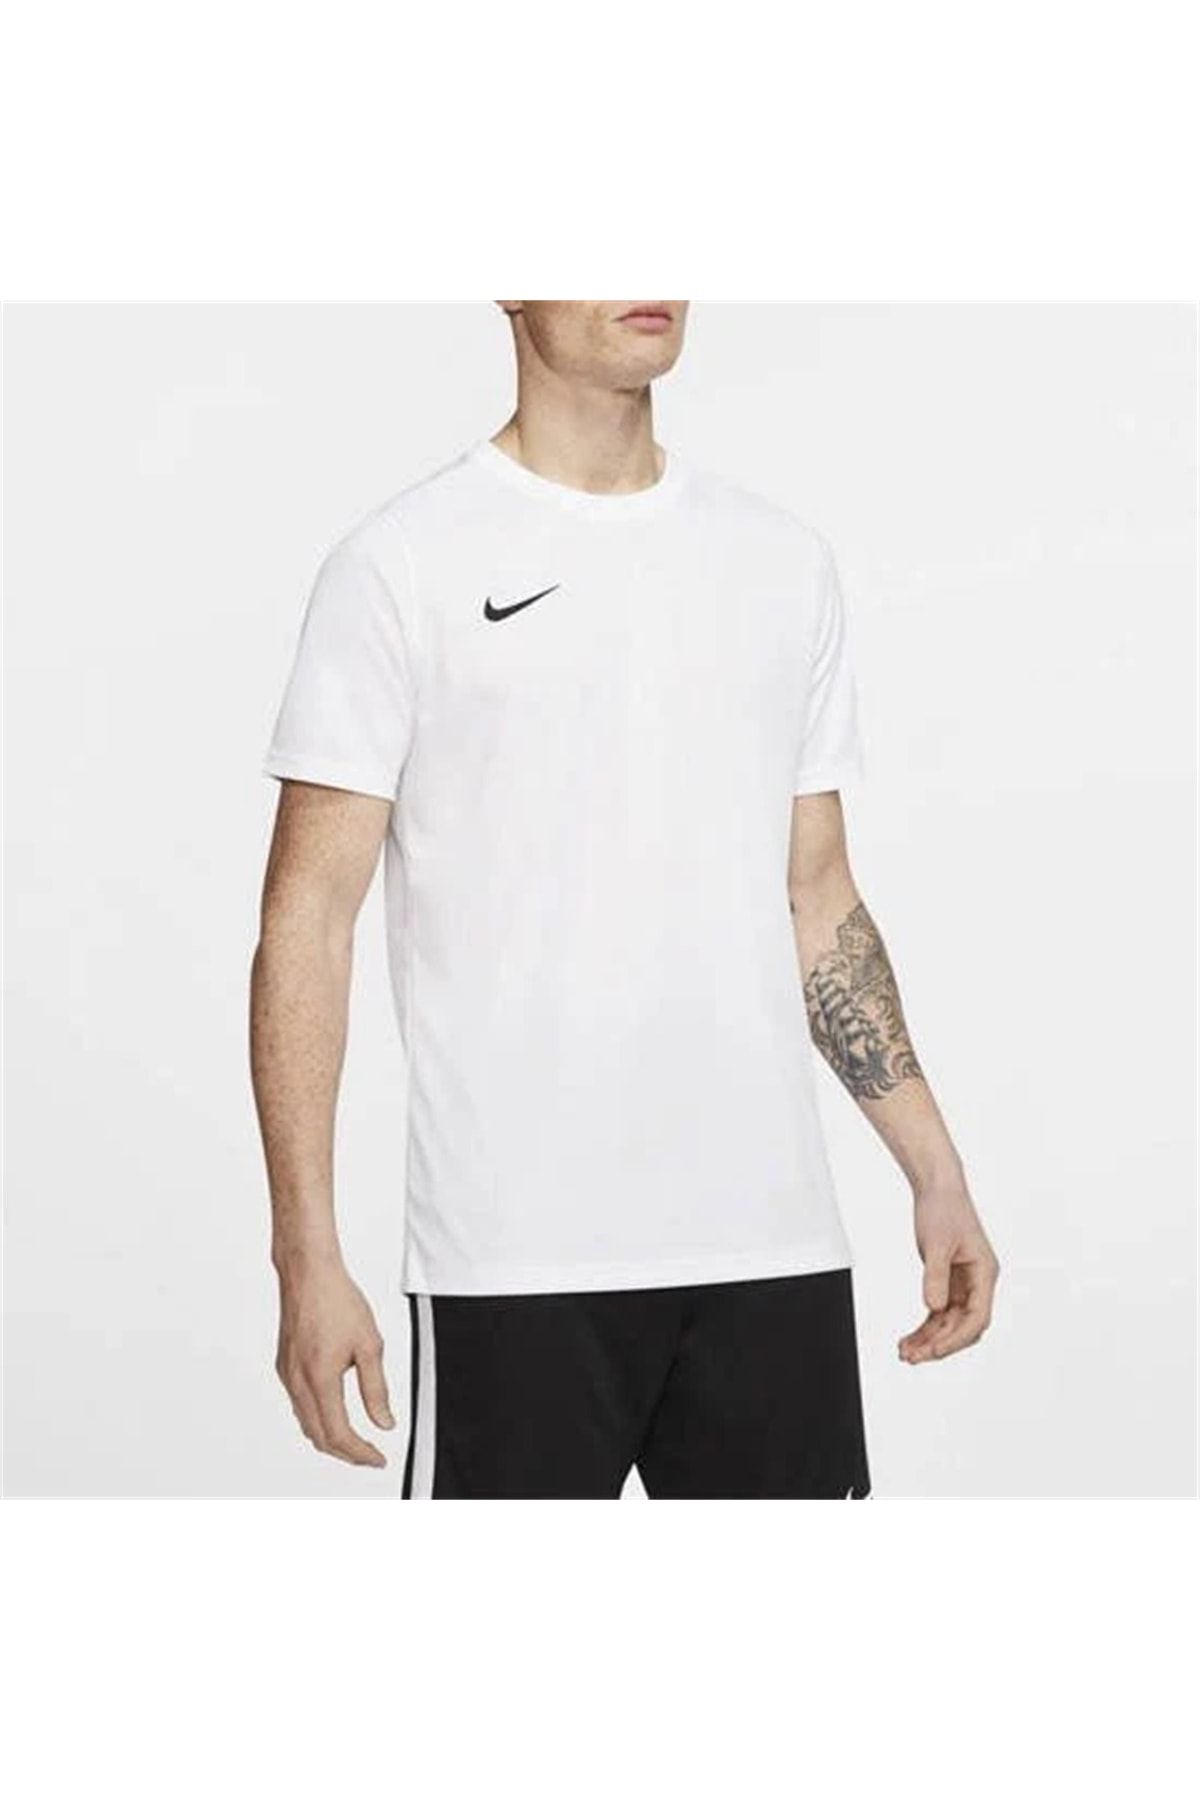 Nike Dry Park Vıı Bv6708-100 Beyaz Erkek Tişört